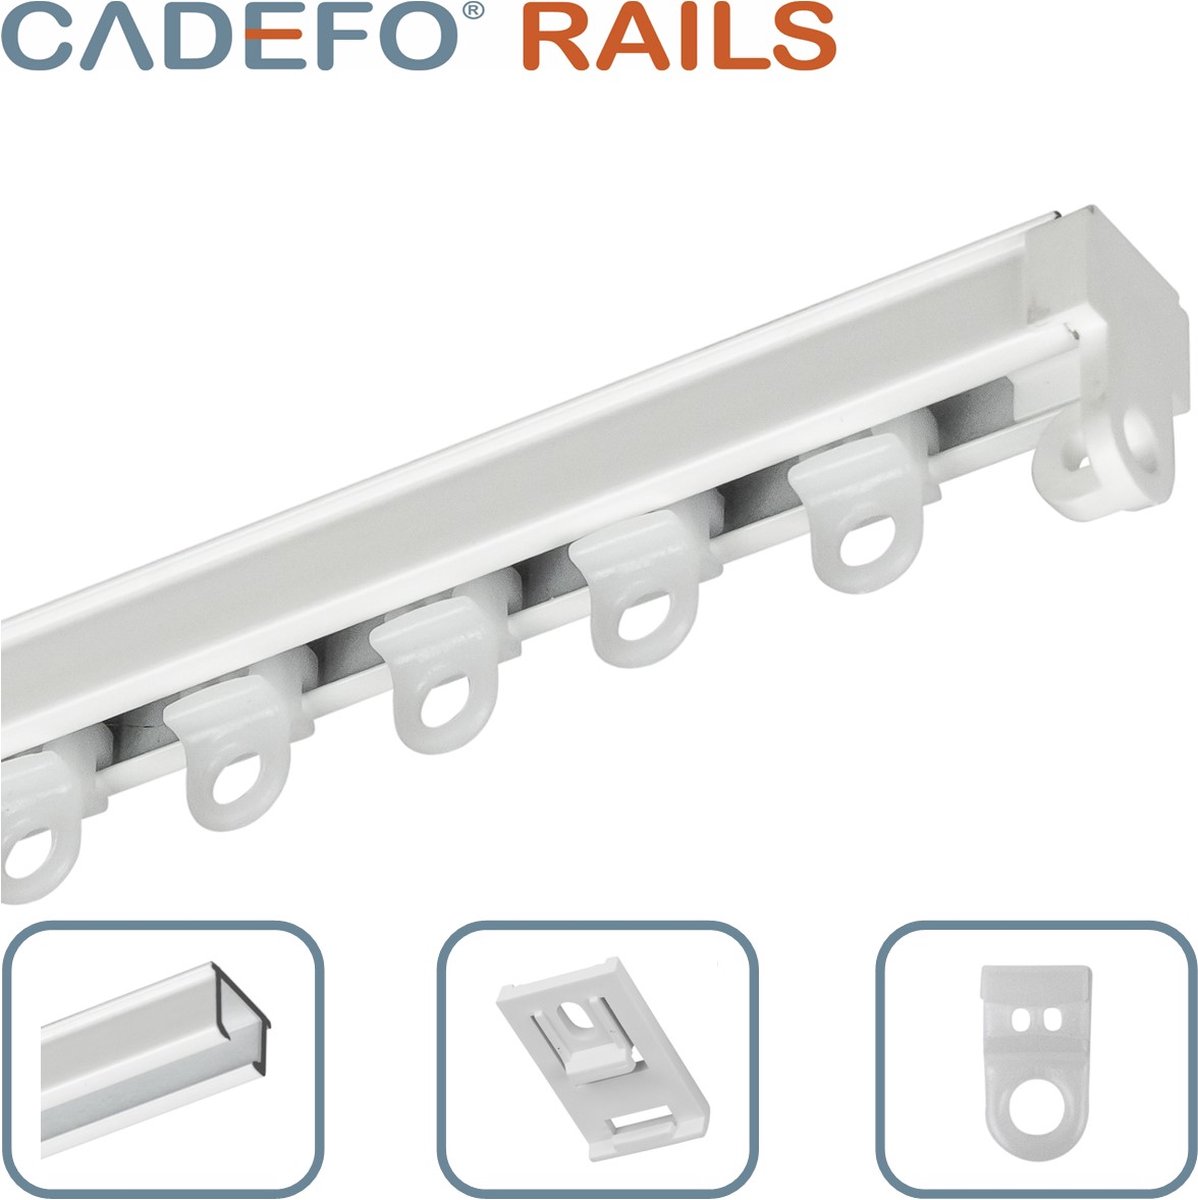 CADEFO RAILS (201 - 250 cm) Gordijnrails - Compleet op maat! - UIT 1 STUK - Leverbaar tot 6 meter - Plafondbevestiging - Lengte 219 cm